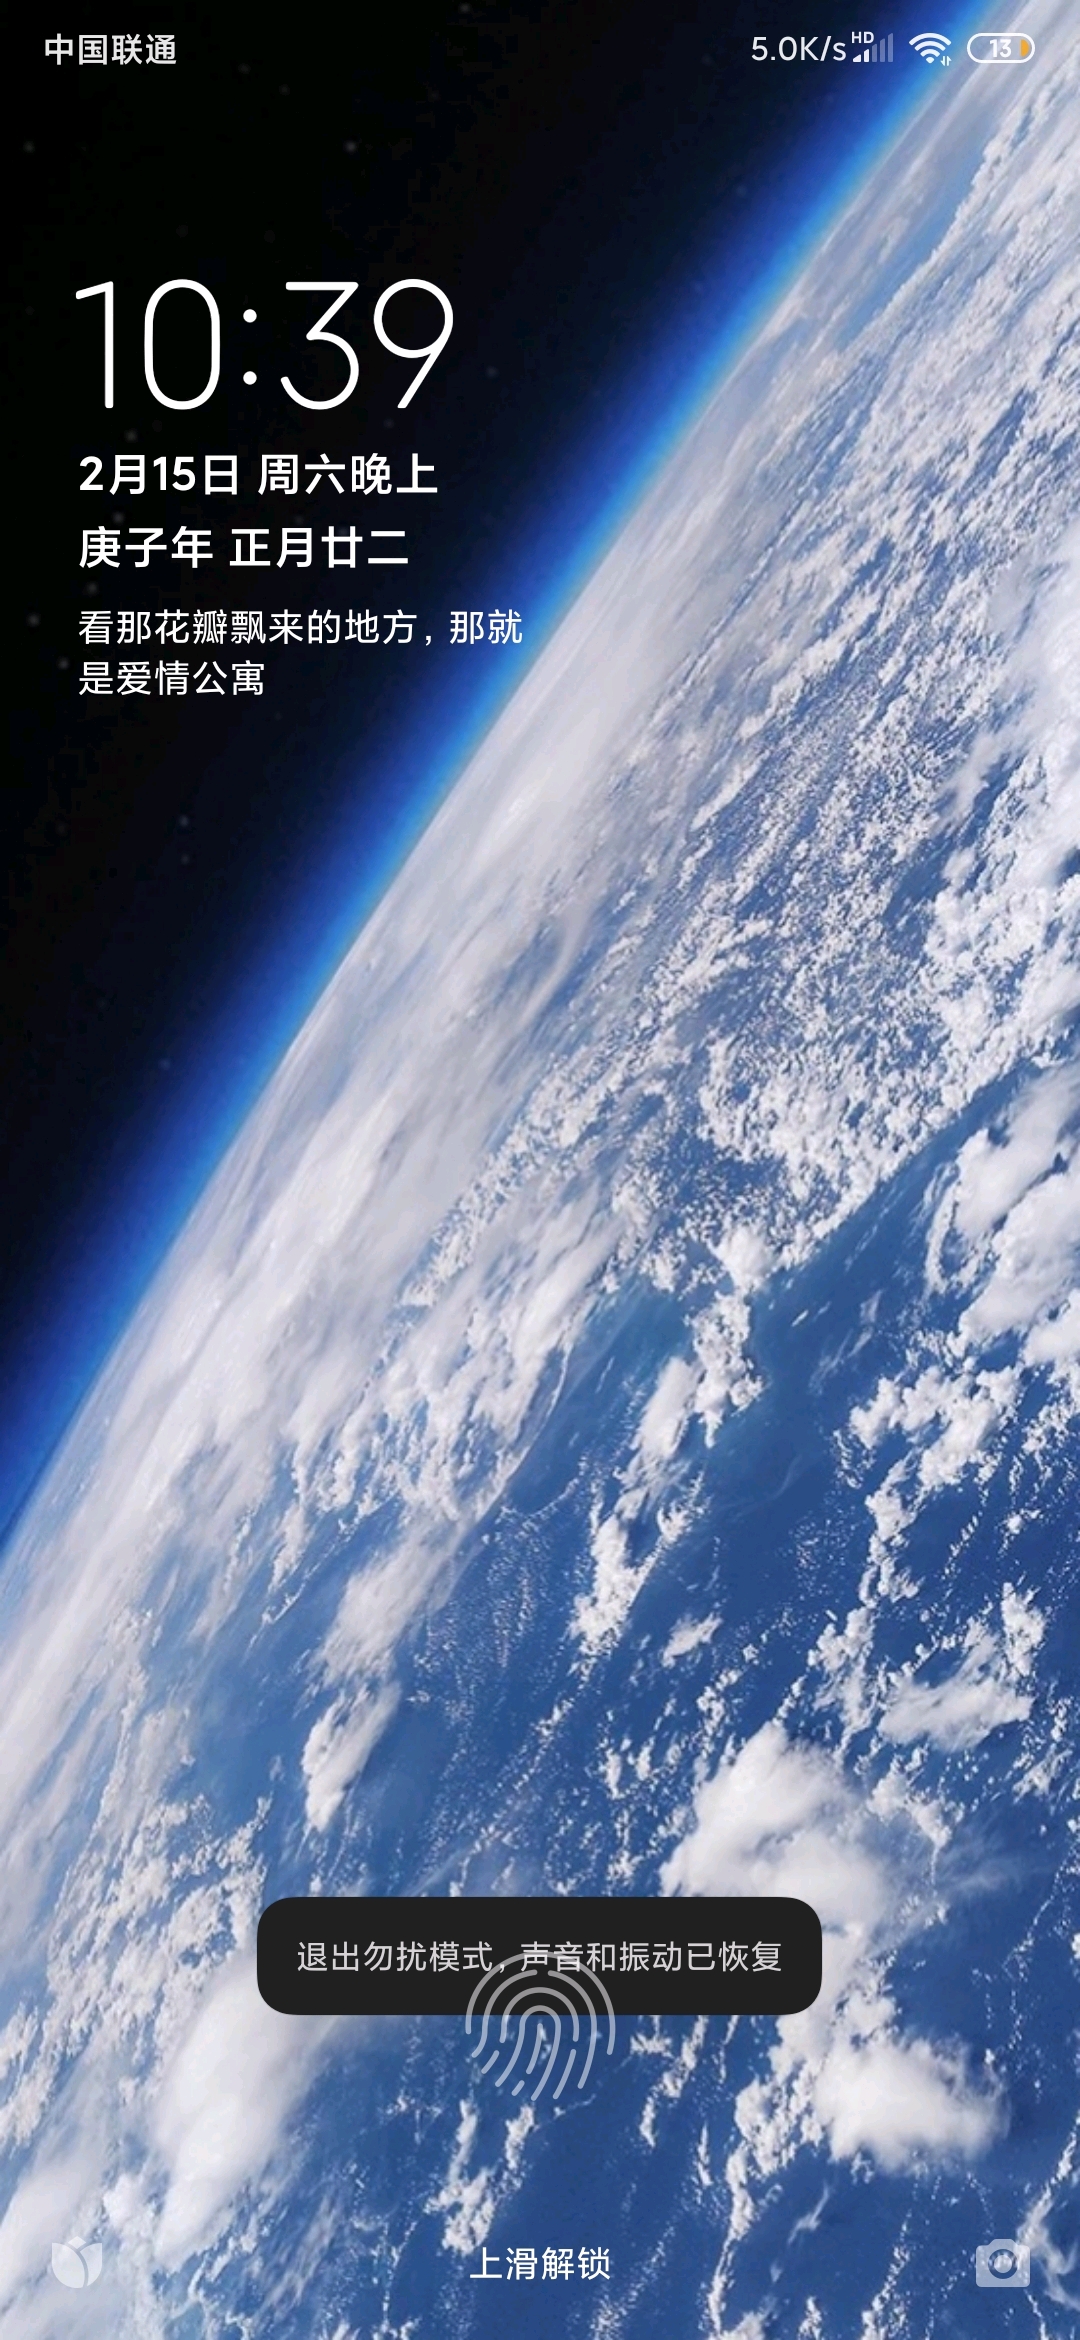 哈苏一亿像素中画幅旗舰相机X2D 100C正式发布_深圳都市网